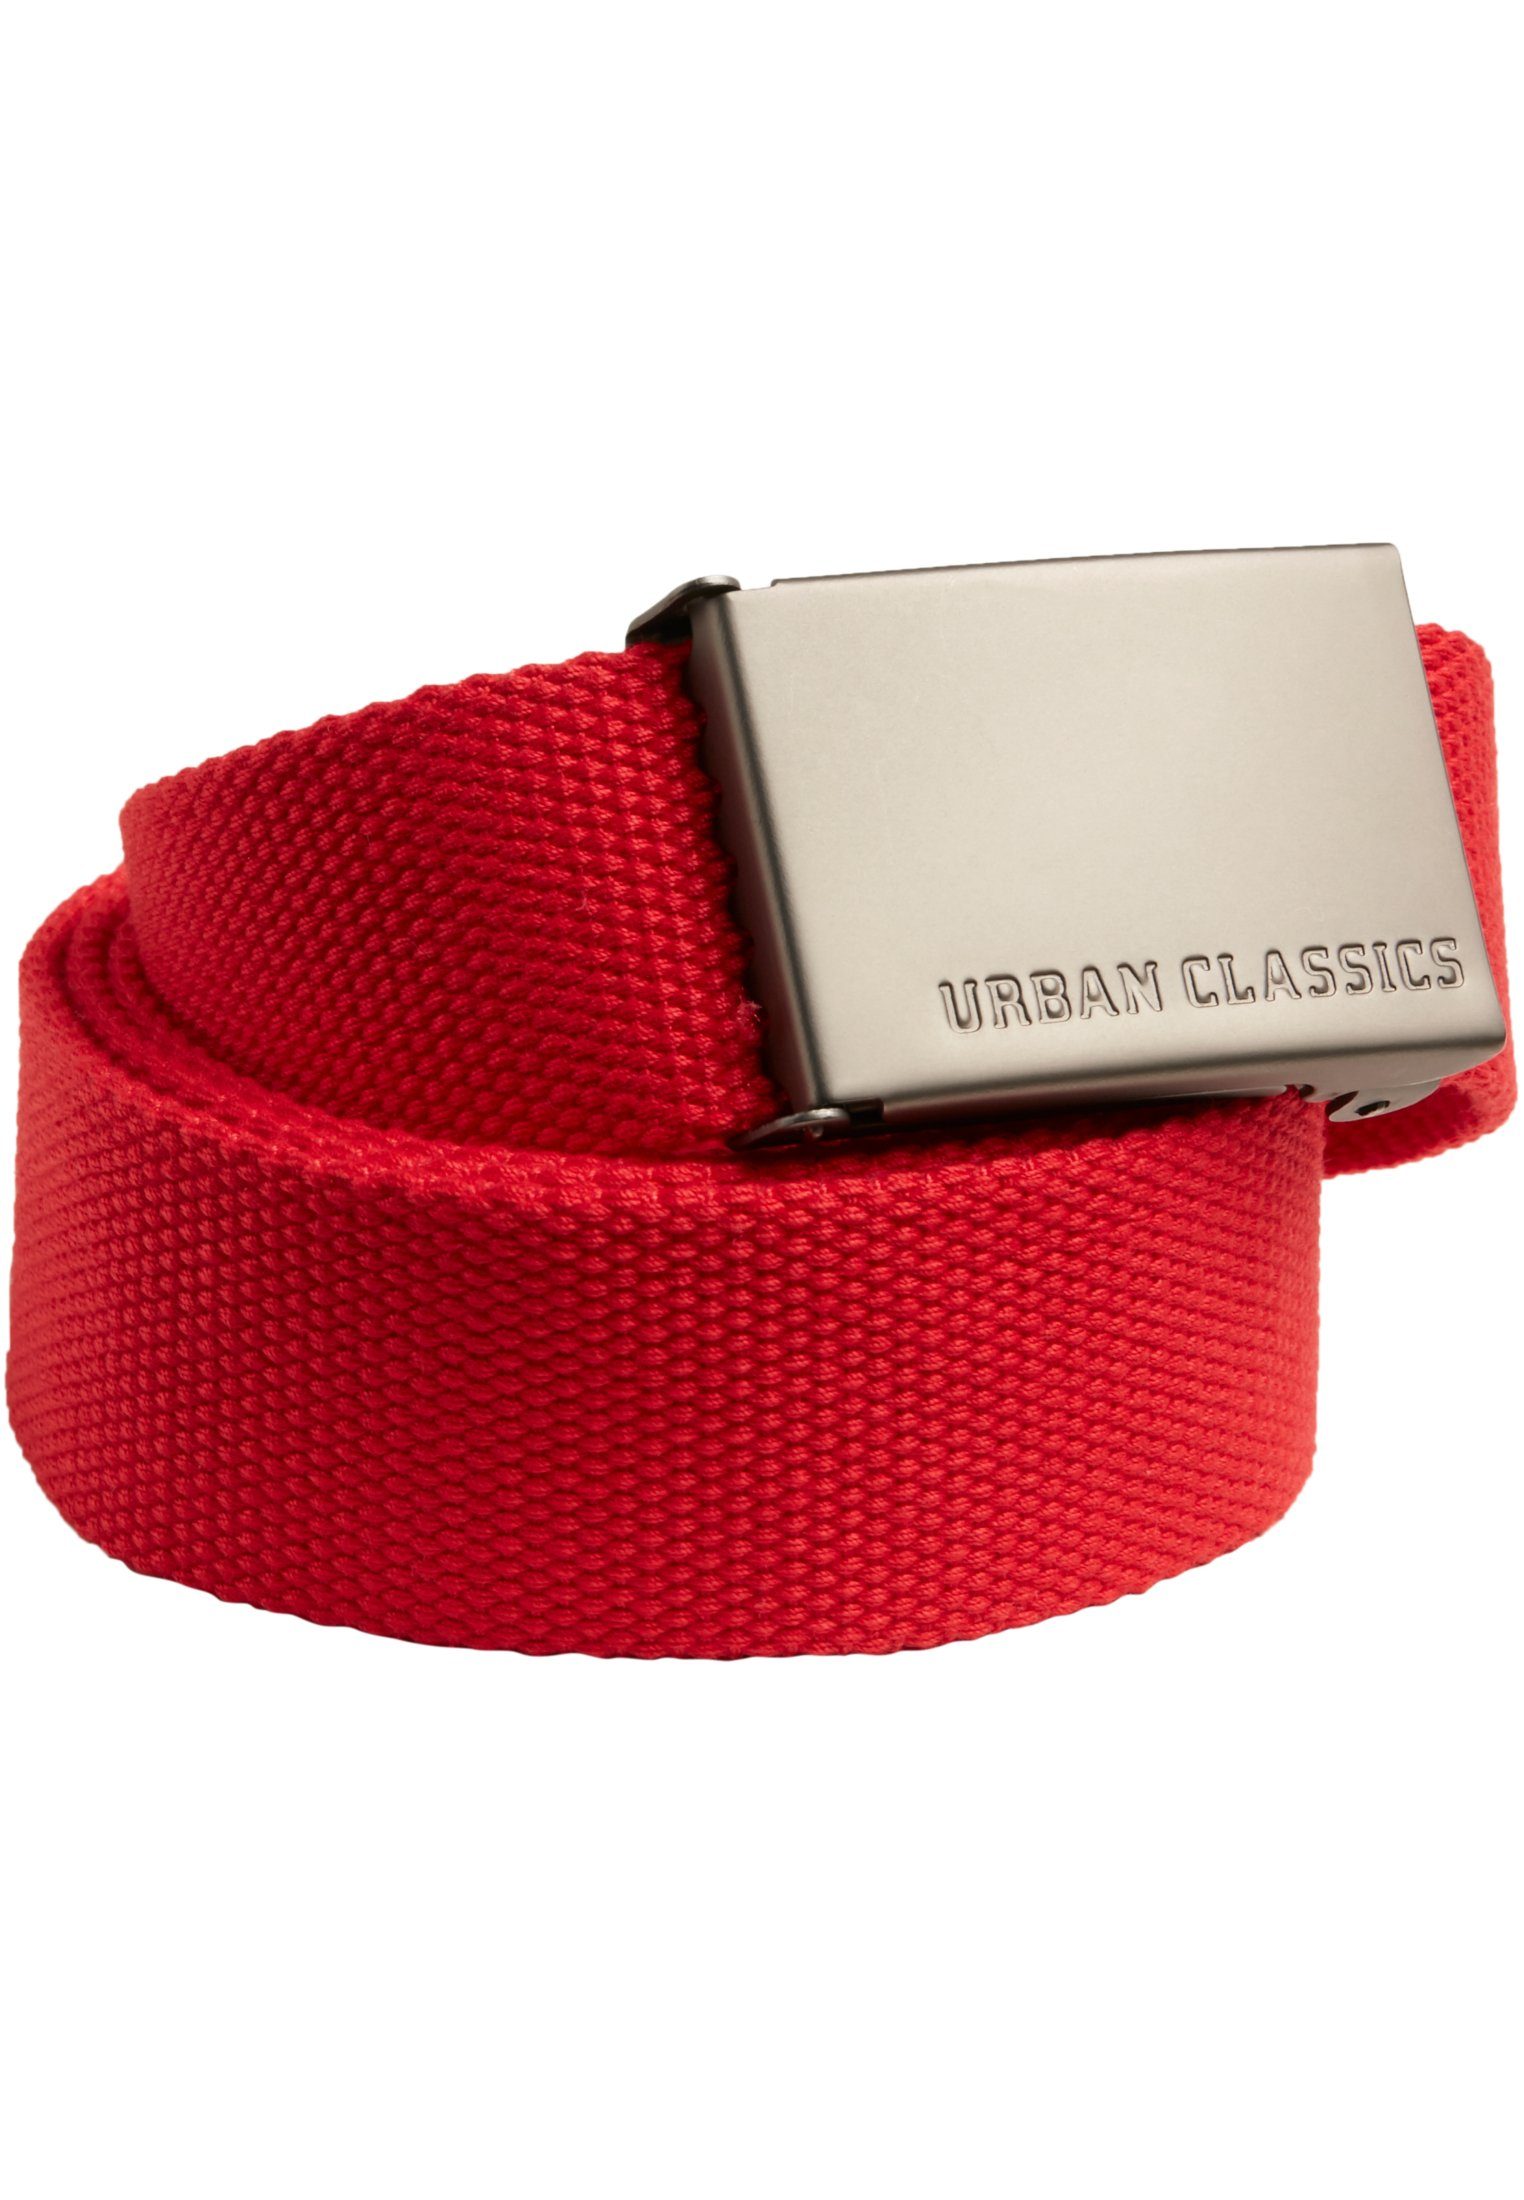 URBAN CLASSICS Hüftgürtel Accessoires Canvas Belts red | Gürtel